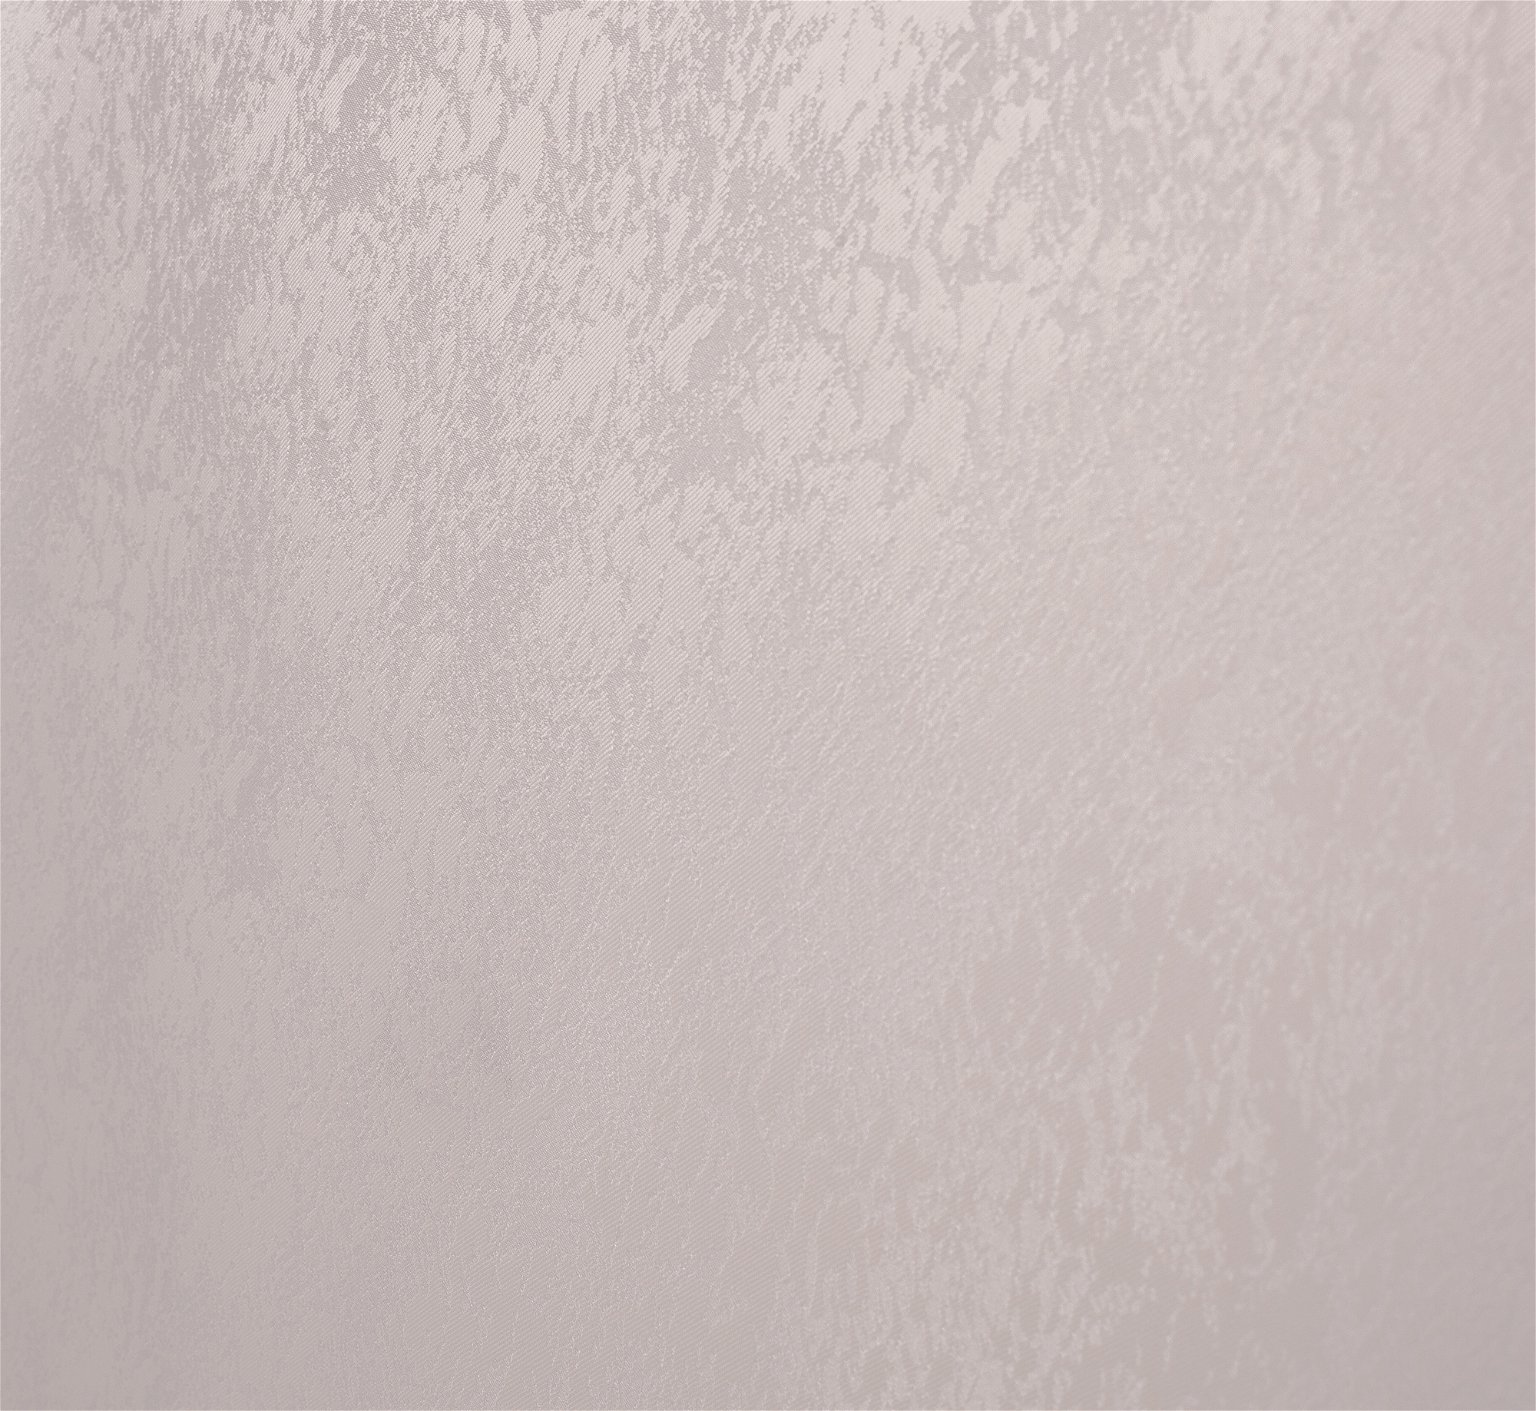 Klasikinė ritininė užuolaida LONDON, kreminės sp., 140 x 170 cm, 100 % poliesteris - 2